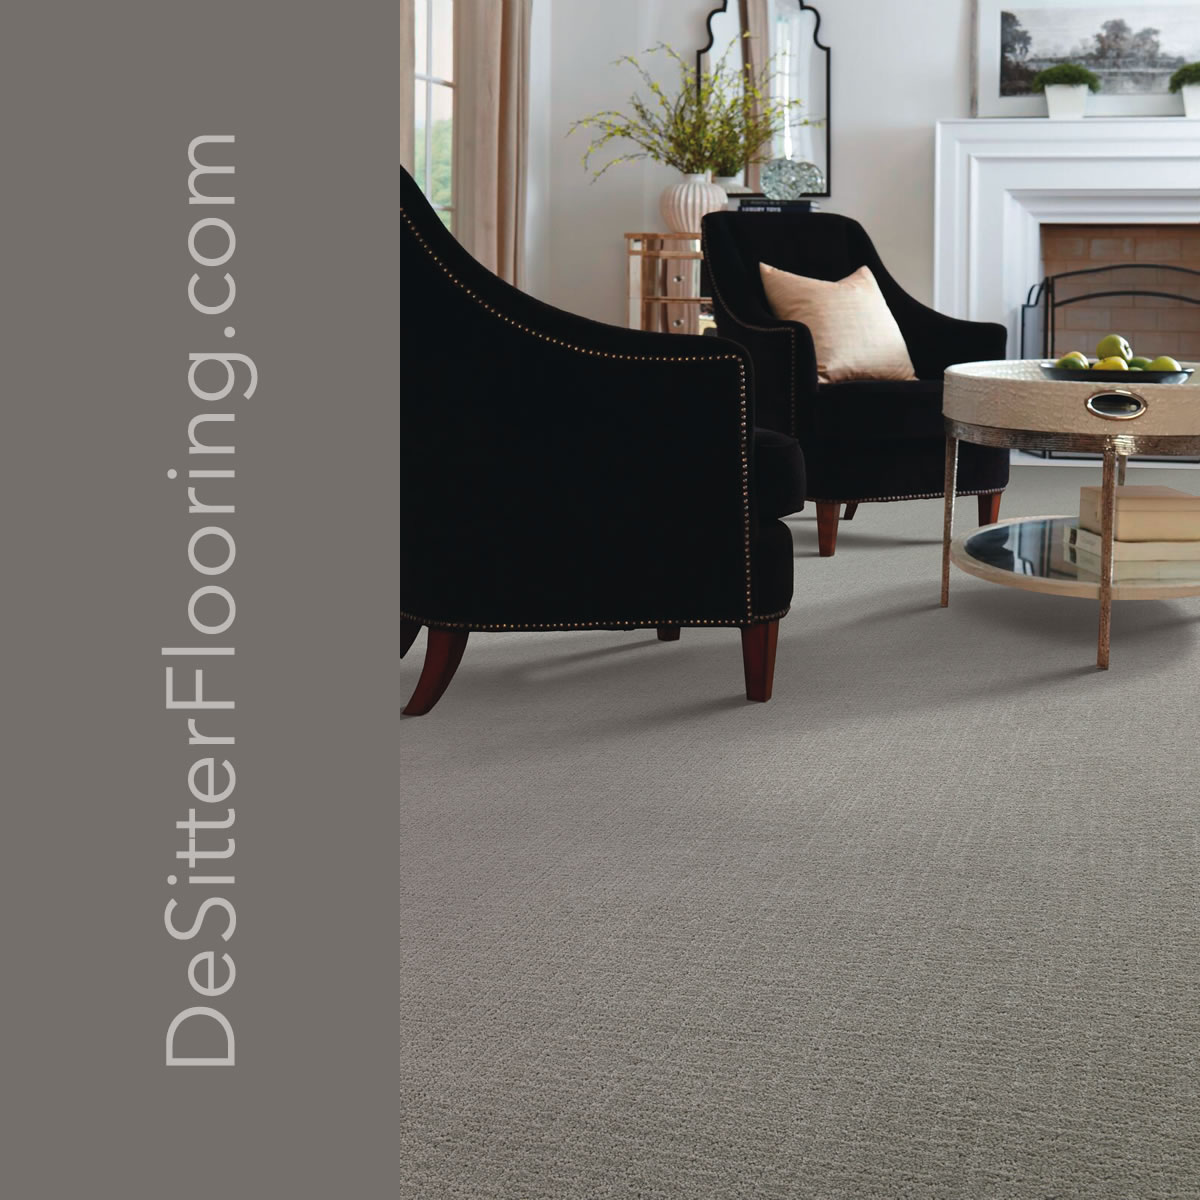 elmhurst-carpet-installation-desitter-flooring